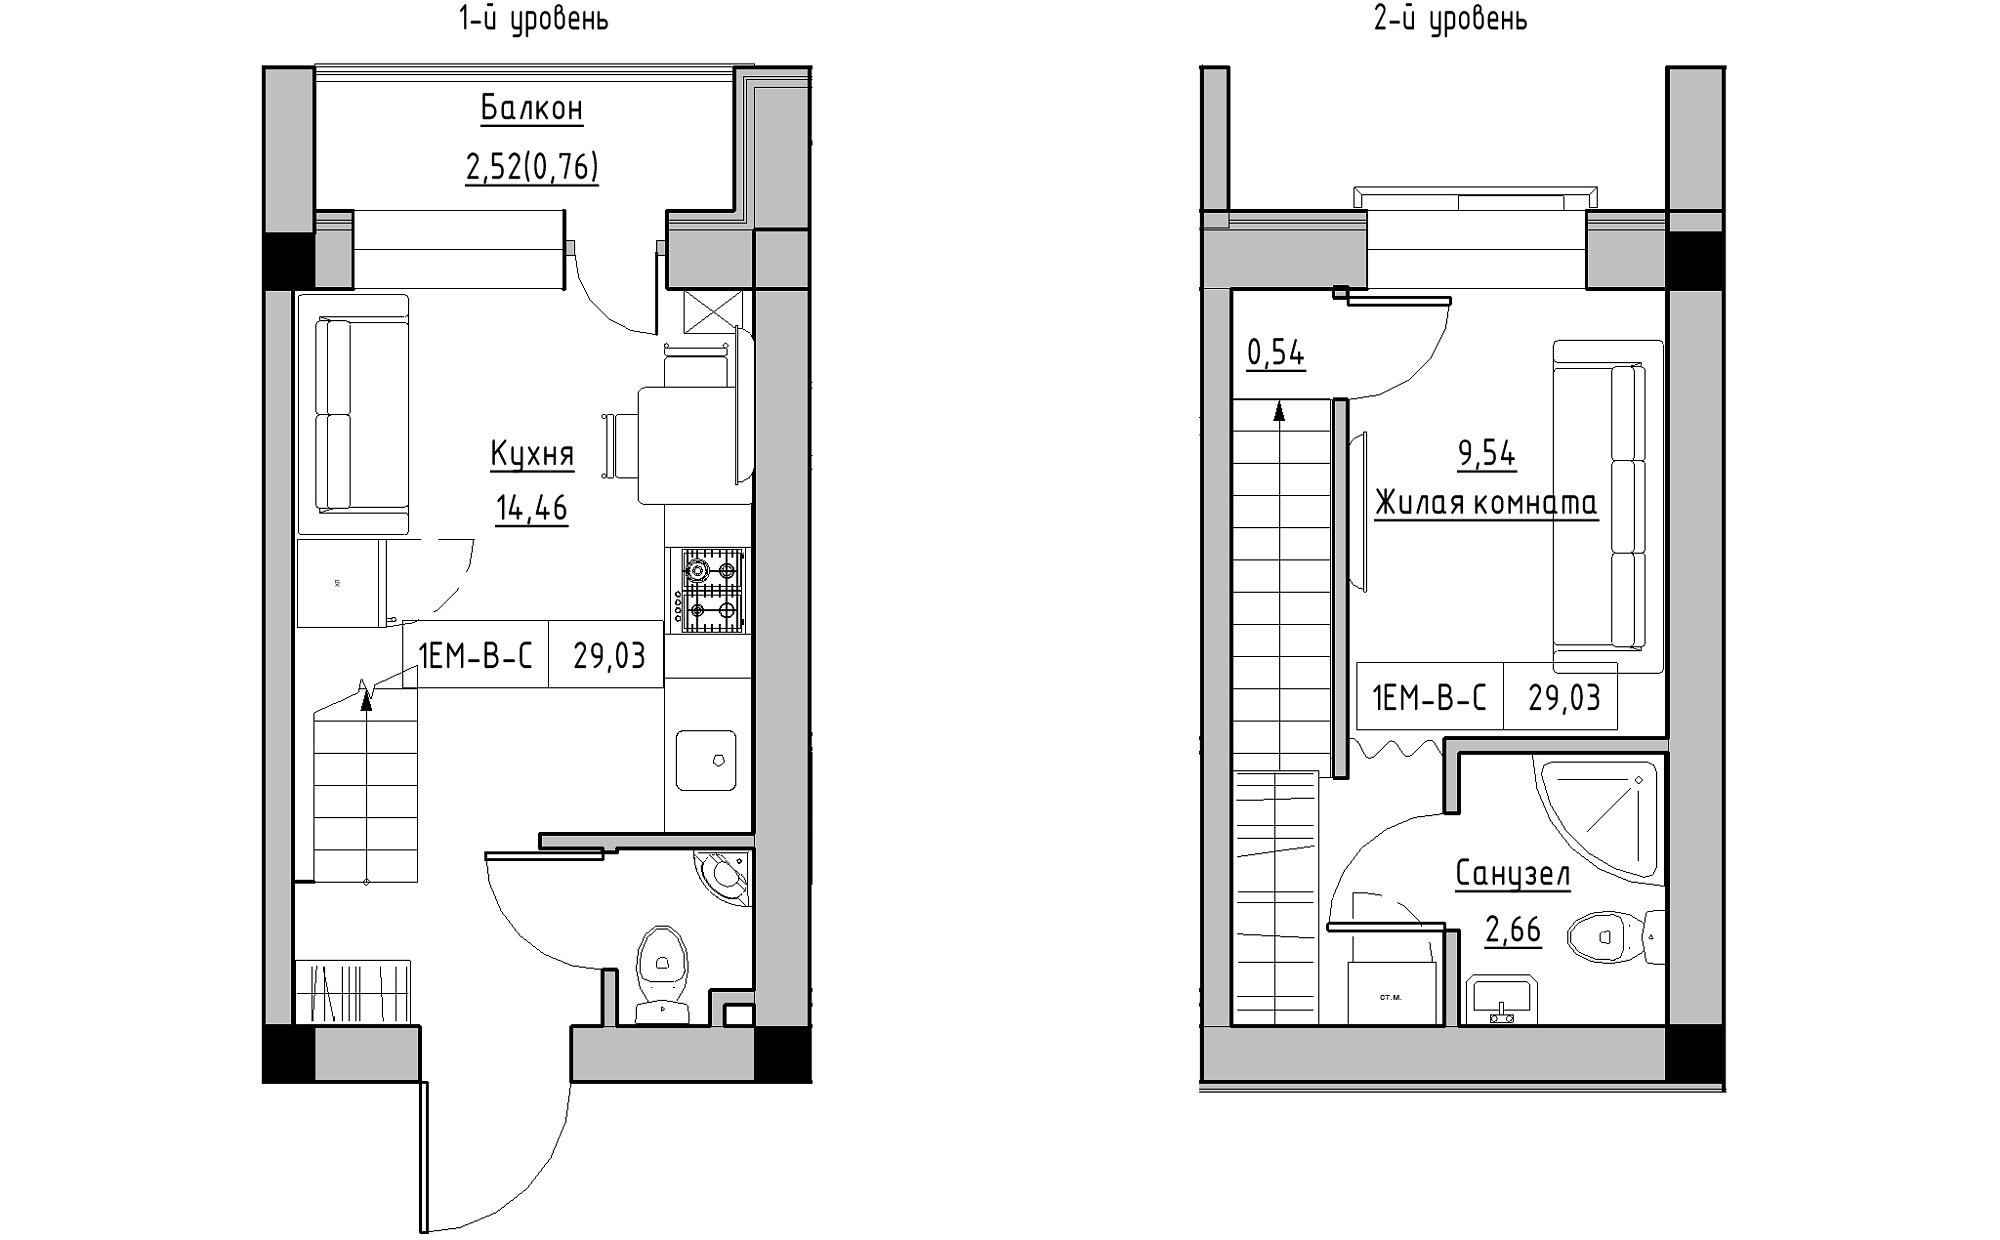 Planning 2-lvl flats area 29.03m2, KS-022-05/0006.